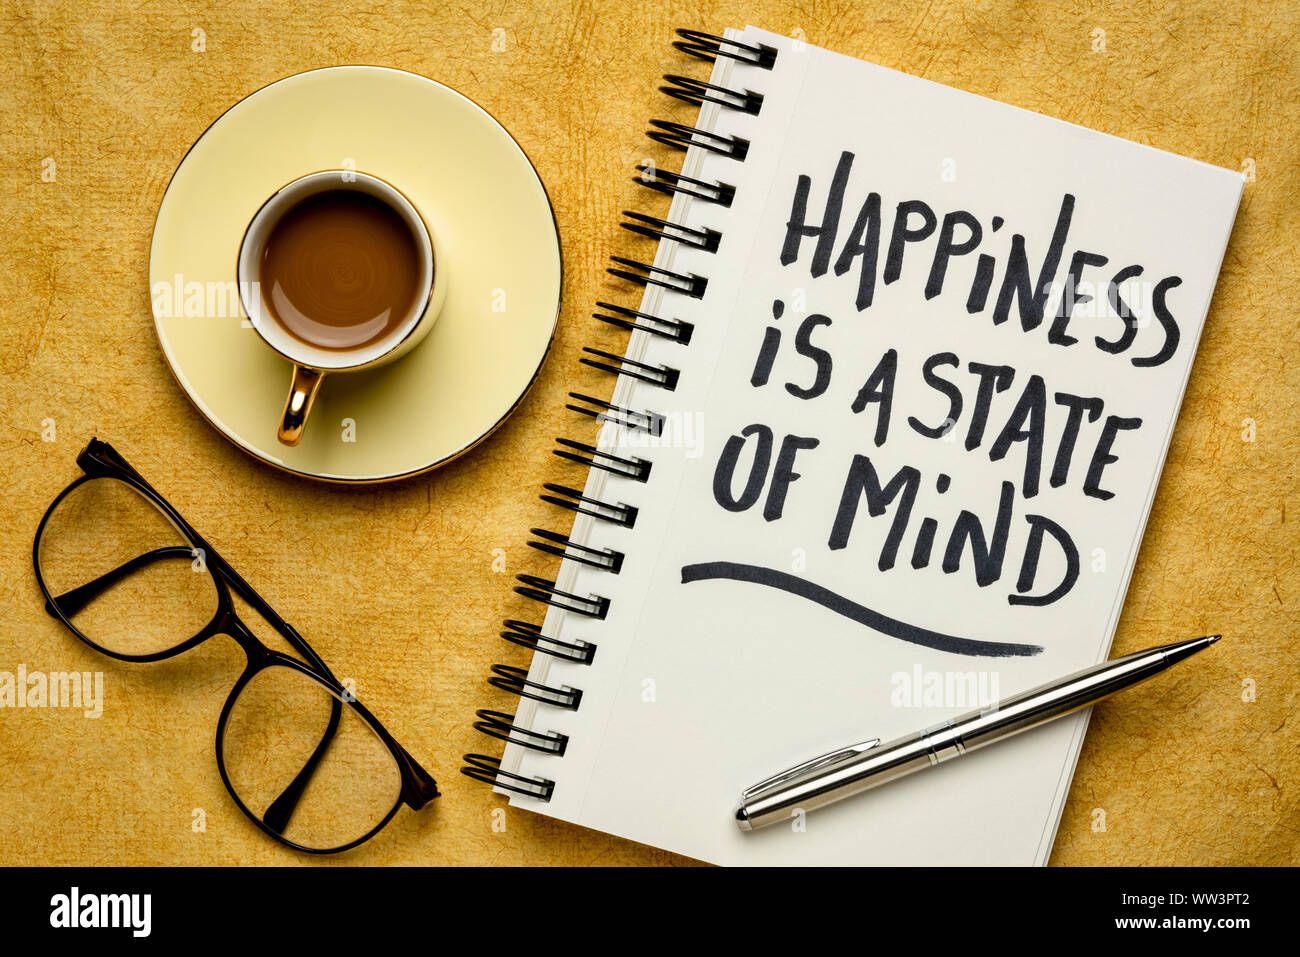 La felicidad es un estado de ánimo - inspiradoras de la escritura a mano en un cuaderno de espiral con café, éxito, positividad y el concepto de desarrollo personal Foto de stock